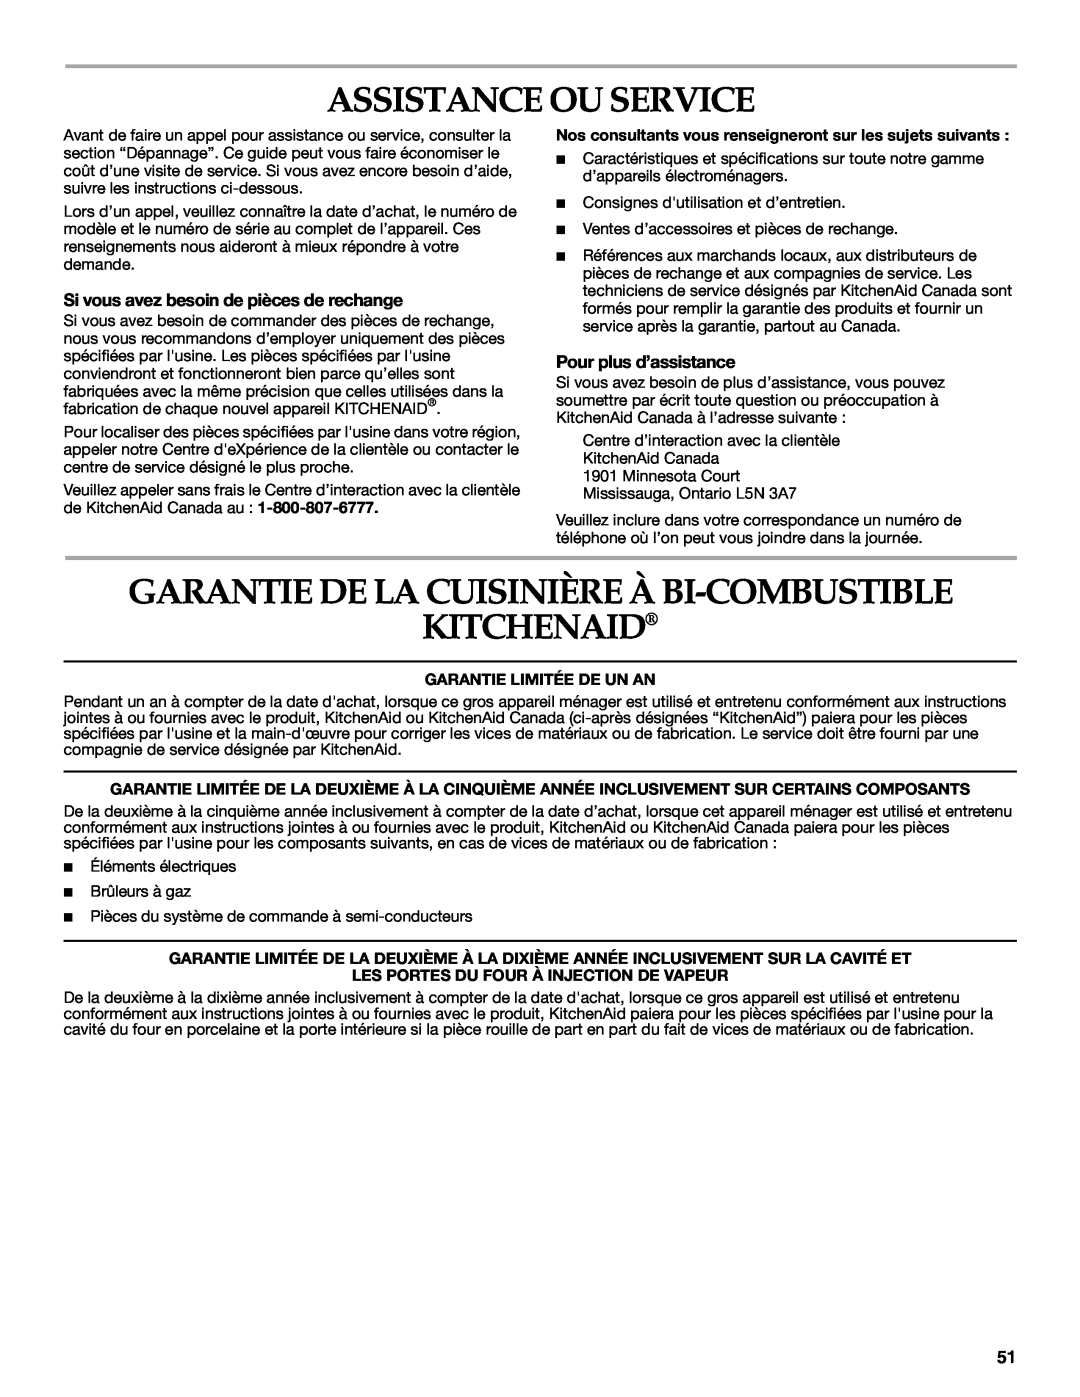 KitchenAid KDRP407 KDRP462 manual Assistance Ou Service, Garantie De La Cuisinière À Bi-Combustible Kitchenaid 